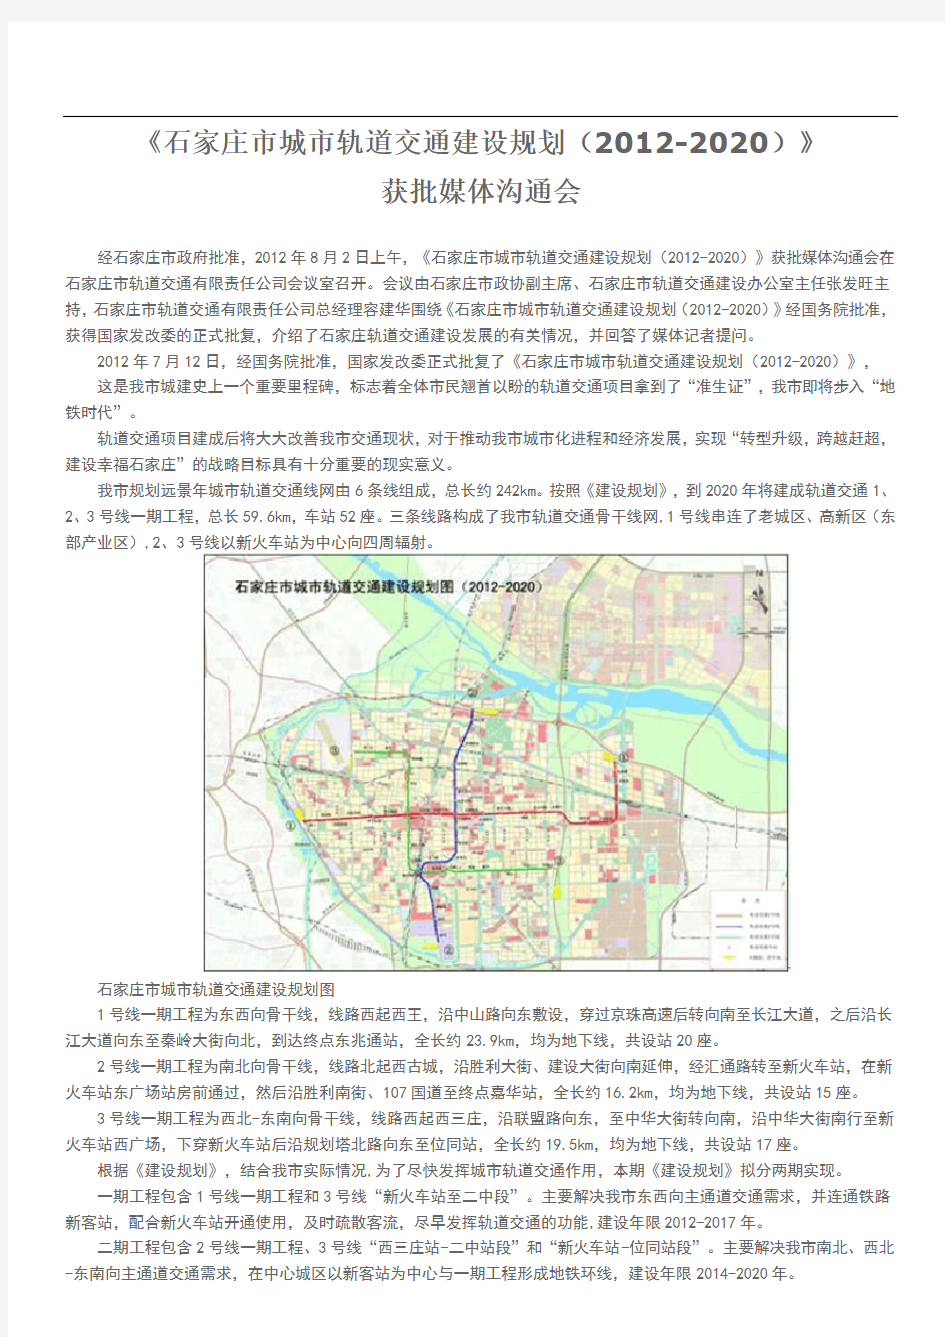 石家庄市城市轨道交通建设规划(2012-2020)